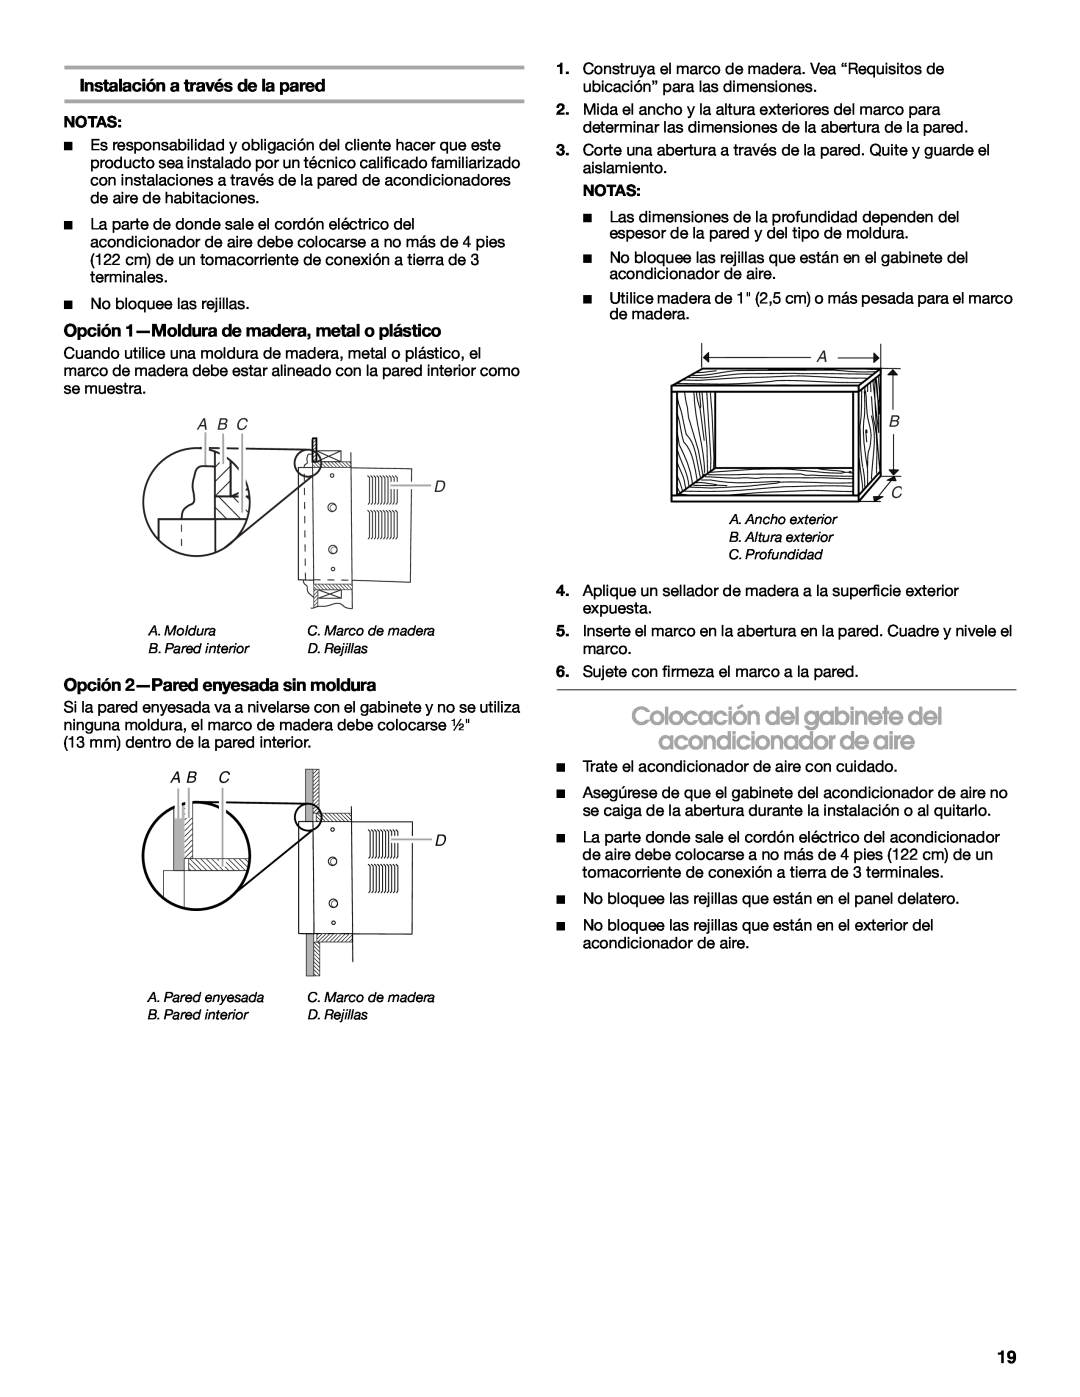 Whirlpool ACE082XP1 manual Colocación del gabinete del, acondicionador de aire, Opción 1-Moldurade madera, metal o plástico 